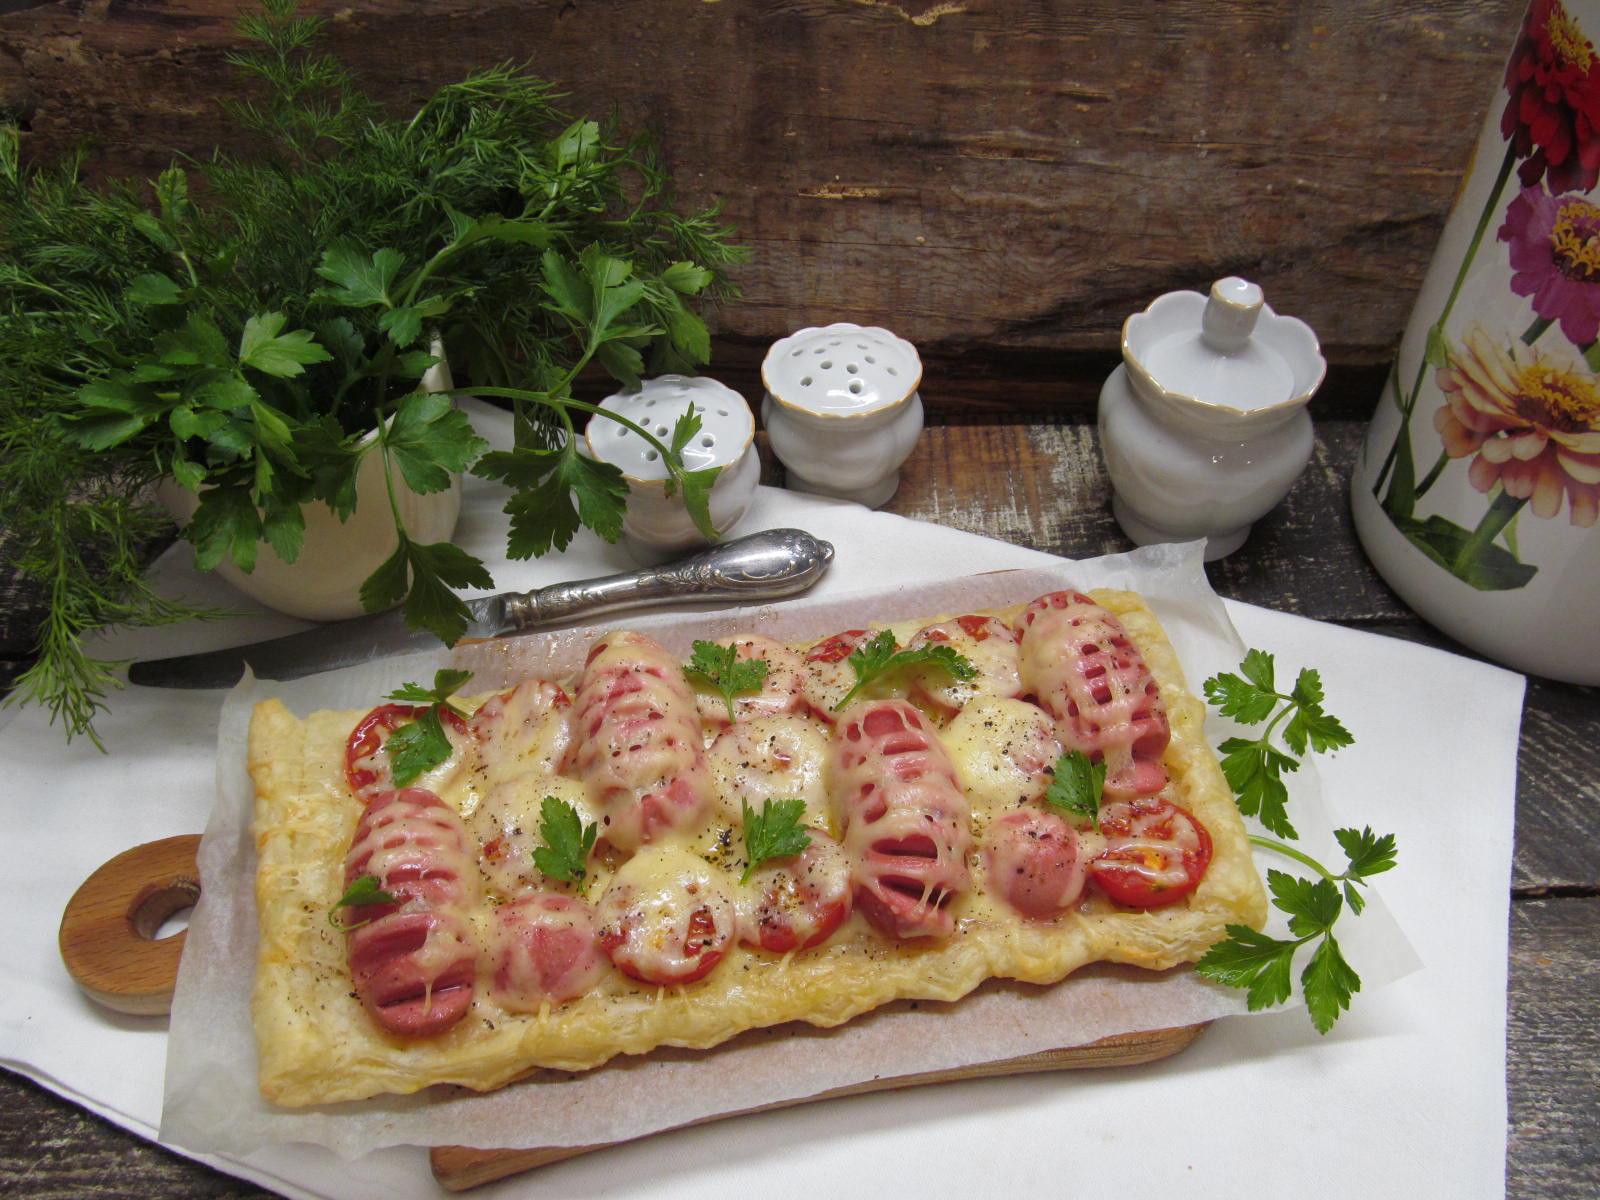 Блюда из сосисок: рецепты с фото